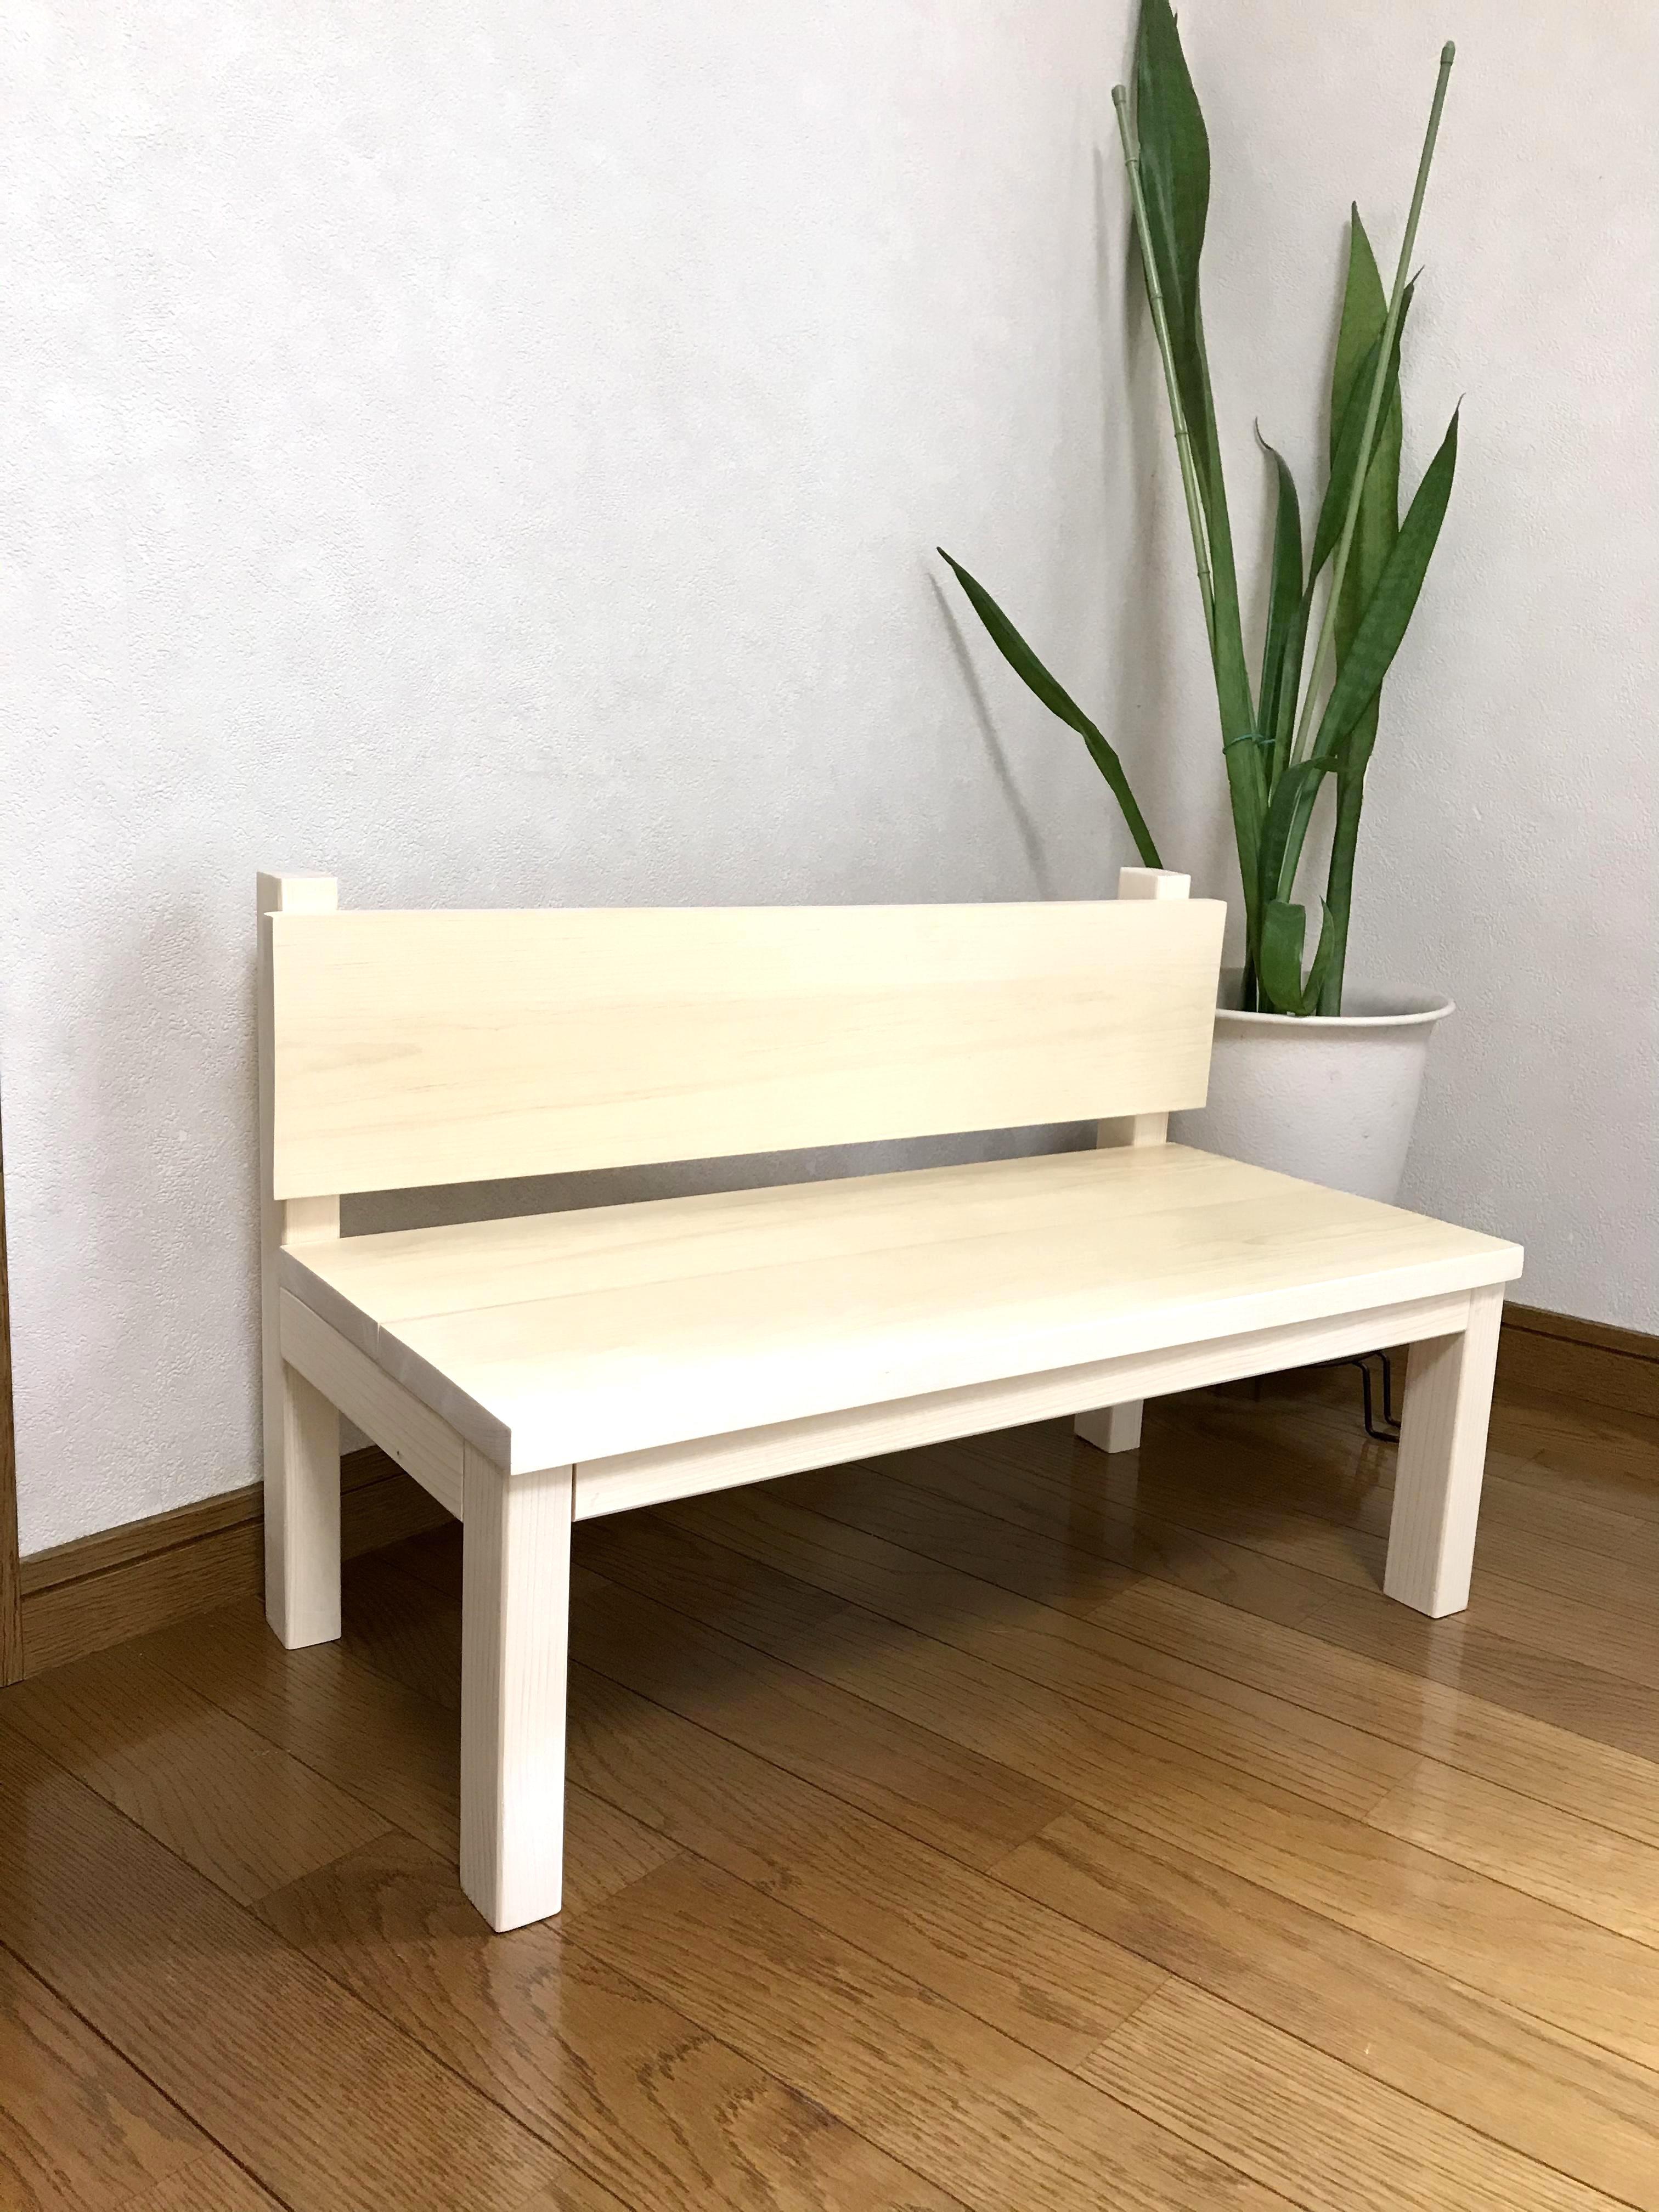 キッズチェア【小さな木のベンチ】 シンプル 木製インテリア 子供用